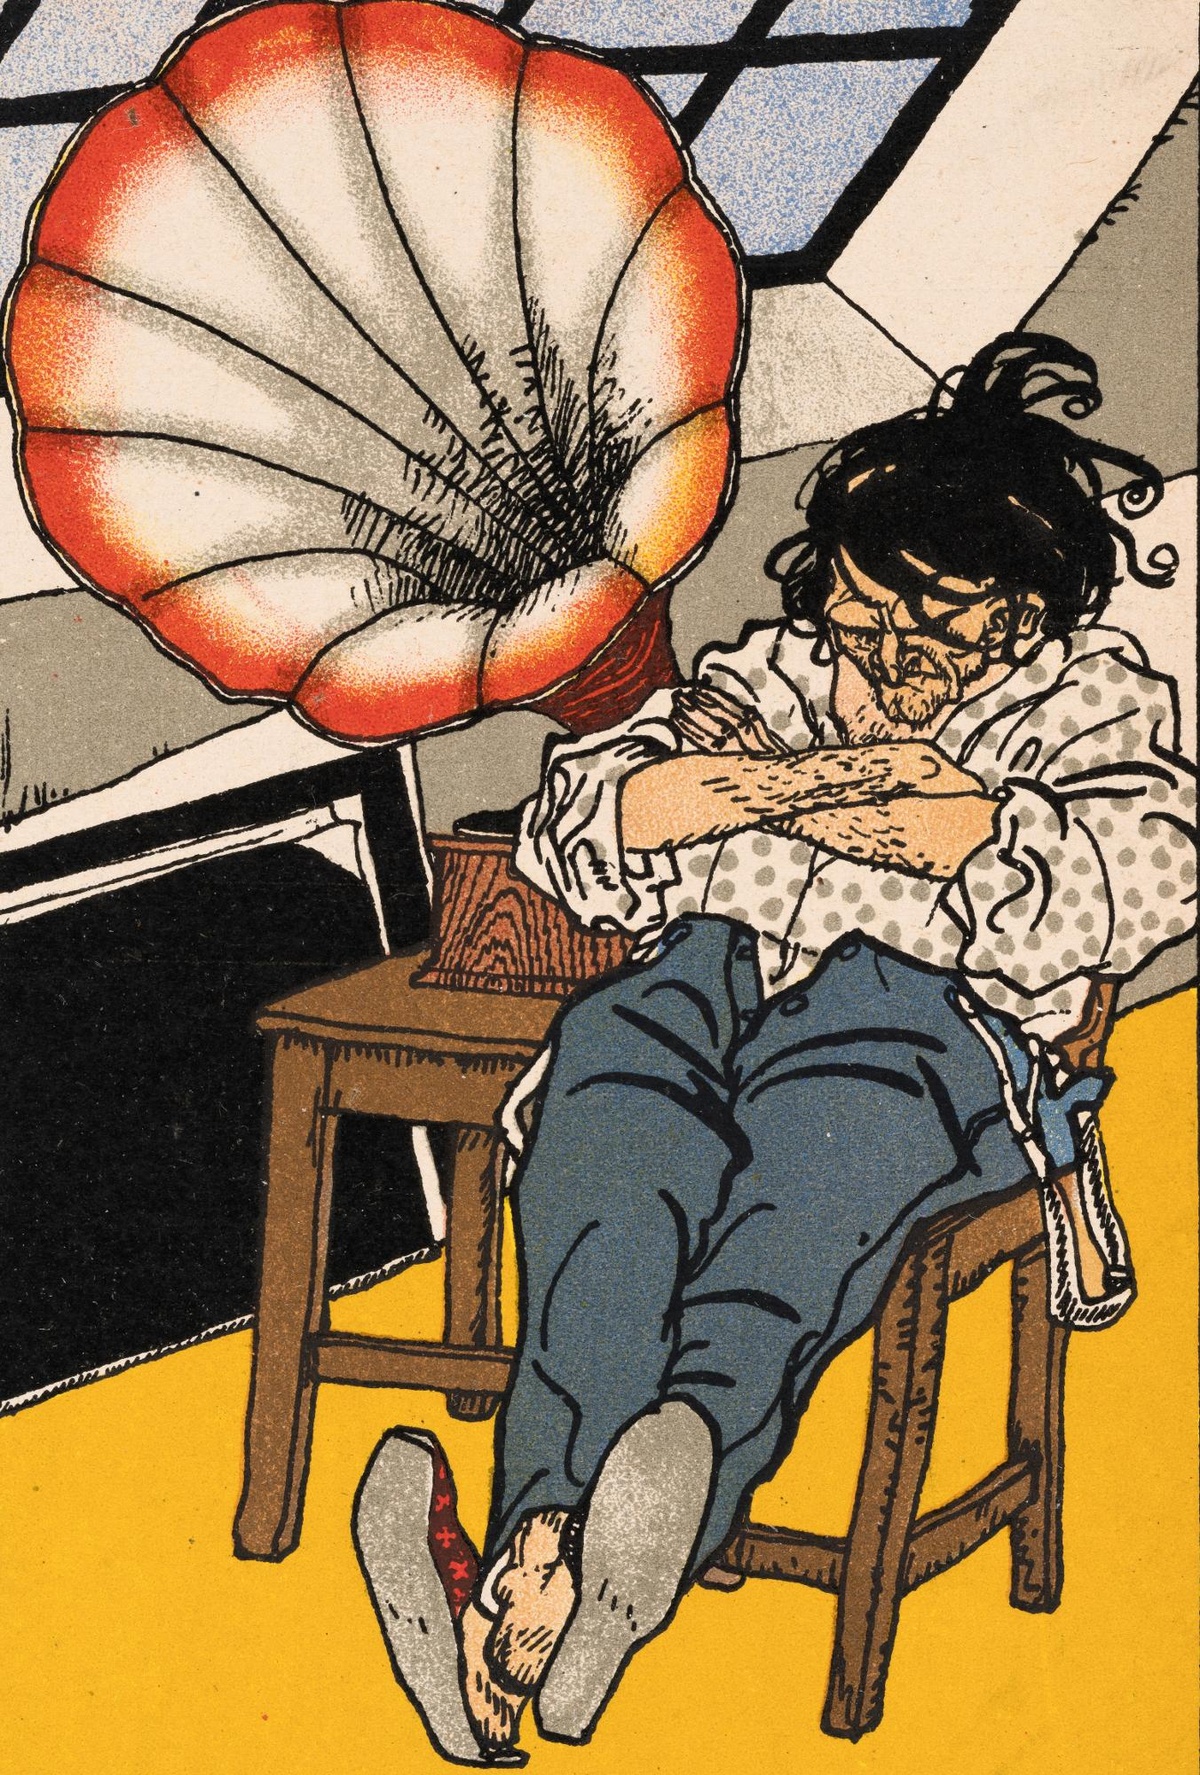 Eine Zeichnung, ein Mann sitzt in einem Zimmer mit einem großen Fenster auf einem Stuhl und hat die Augen geschlossen. Seine Arme sind verschränkt, seine Beine hat er ausgestreckt. Die Hosenträger hängen herunter und die Hose ist aufgeknöpft. Neben ihm auf einem Tisch steht ein großes Grammophon.  © Wien Museum, Postkarte der Wiener Werkstätte: Schlafender Mann mit Grammophon, Moriz Jung, 1911.